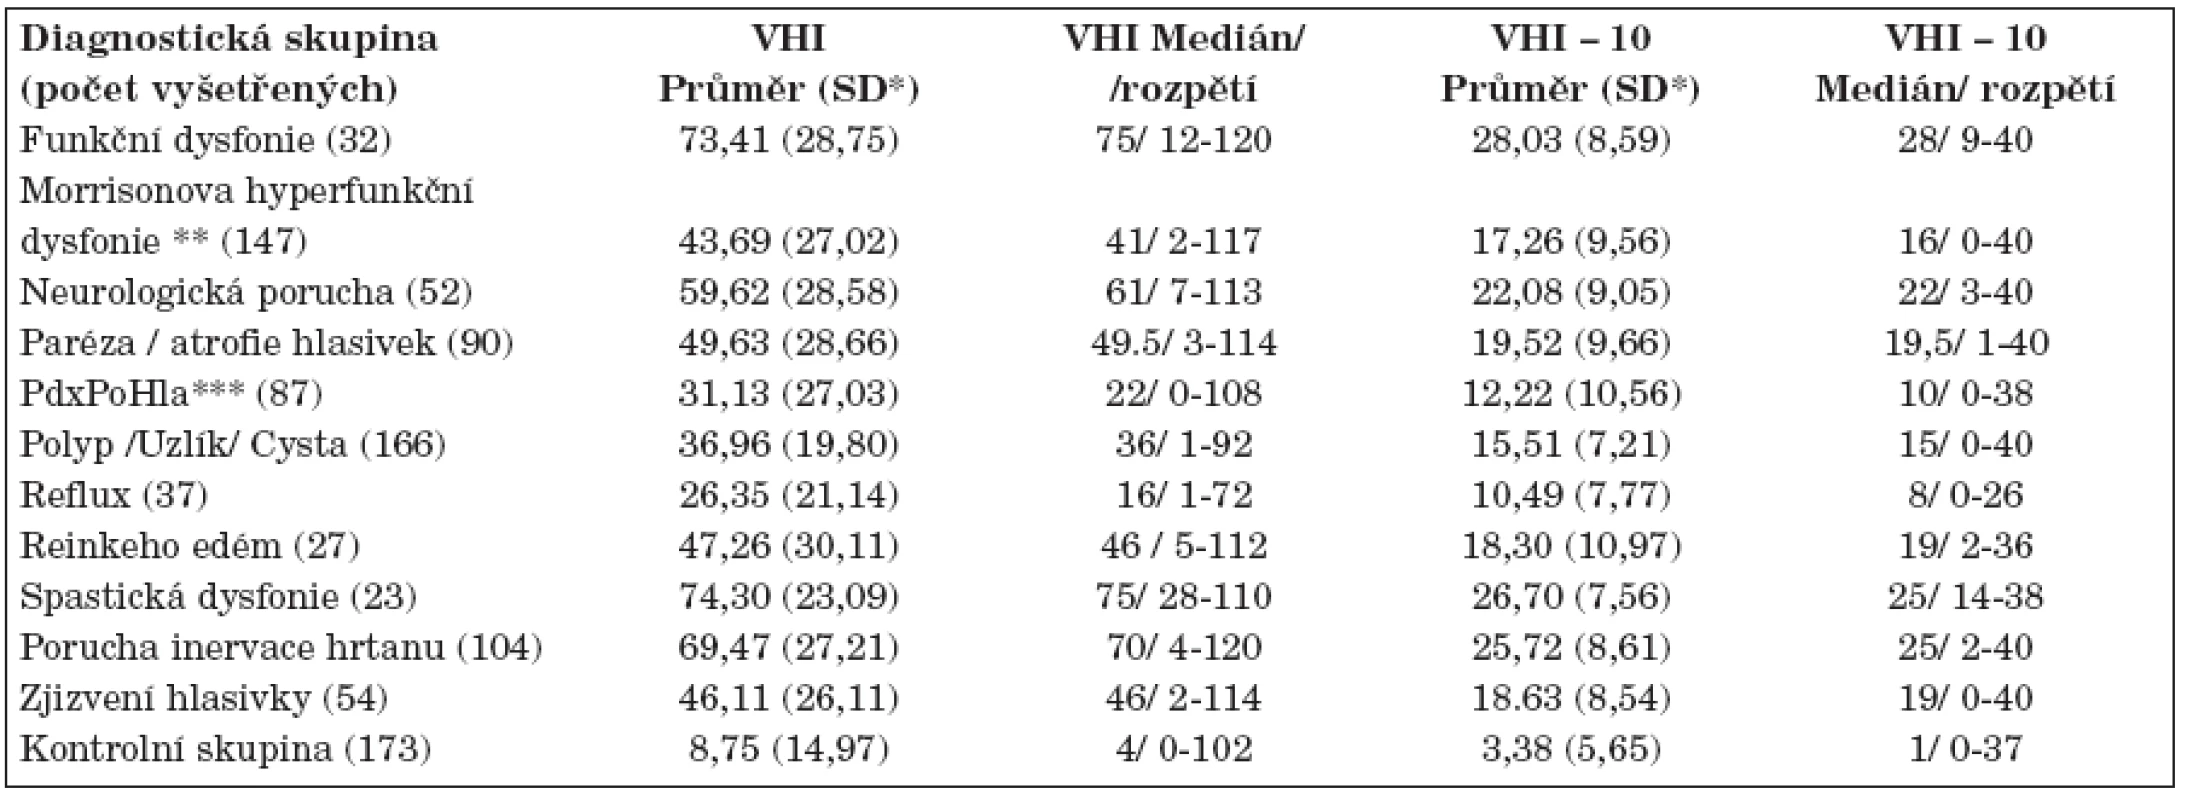 Hodnoty VHI a VHI-10 u různých diagnóz podle Rosena a kol. (19).